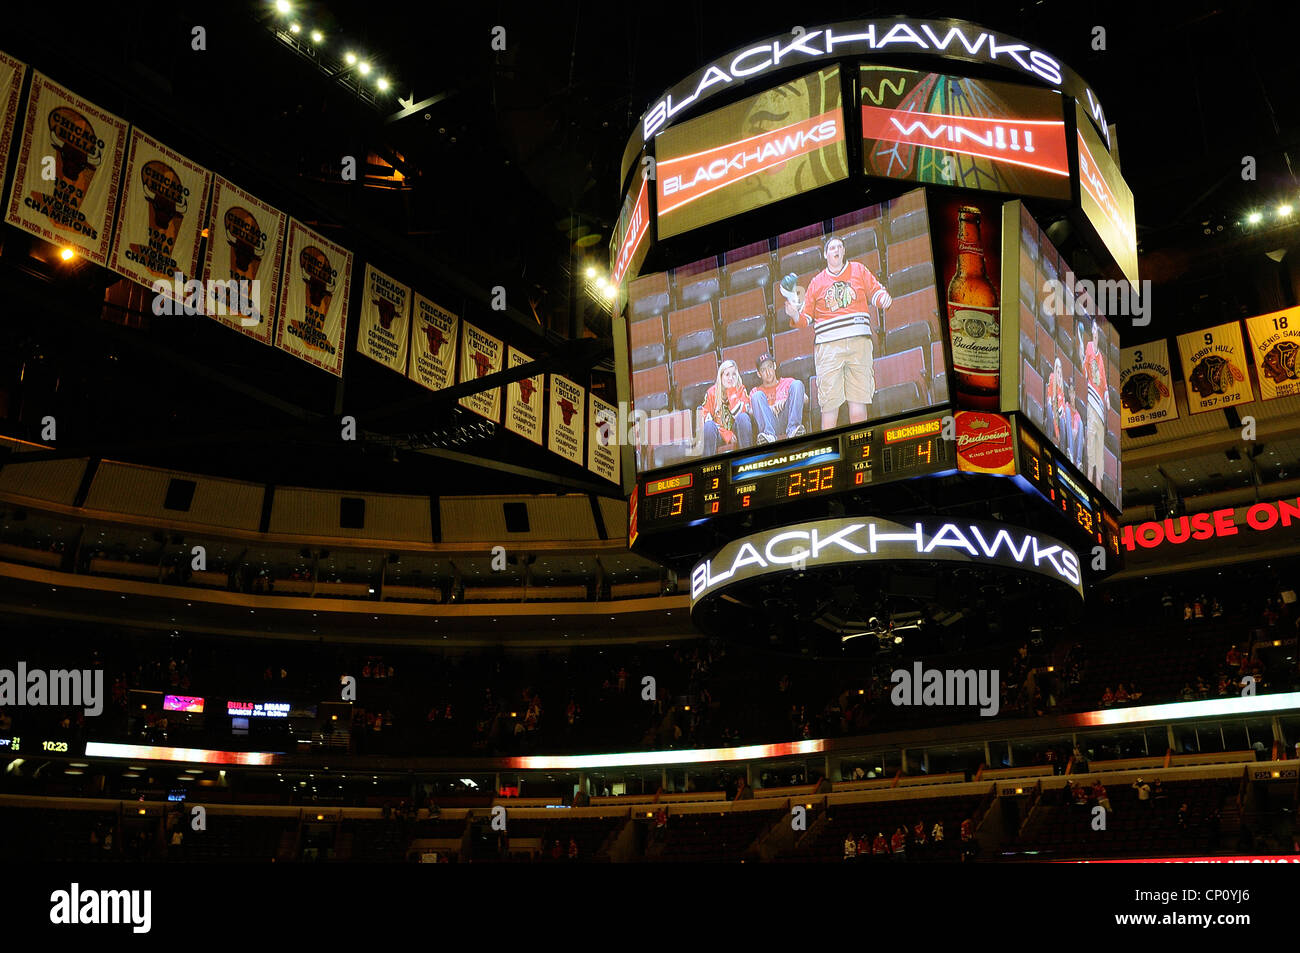 Step Inside: United Center - Home of the Bulls & Blackhawks